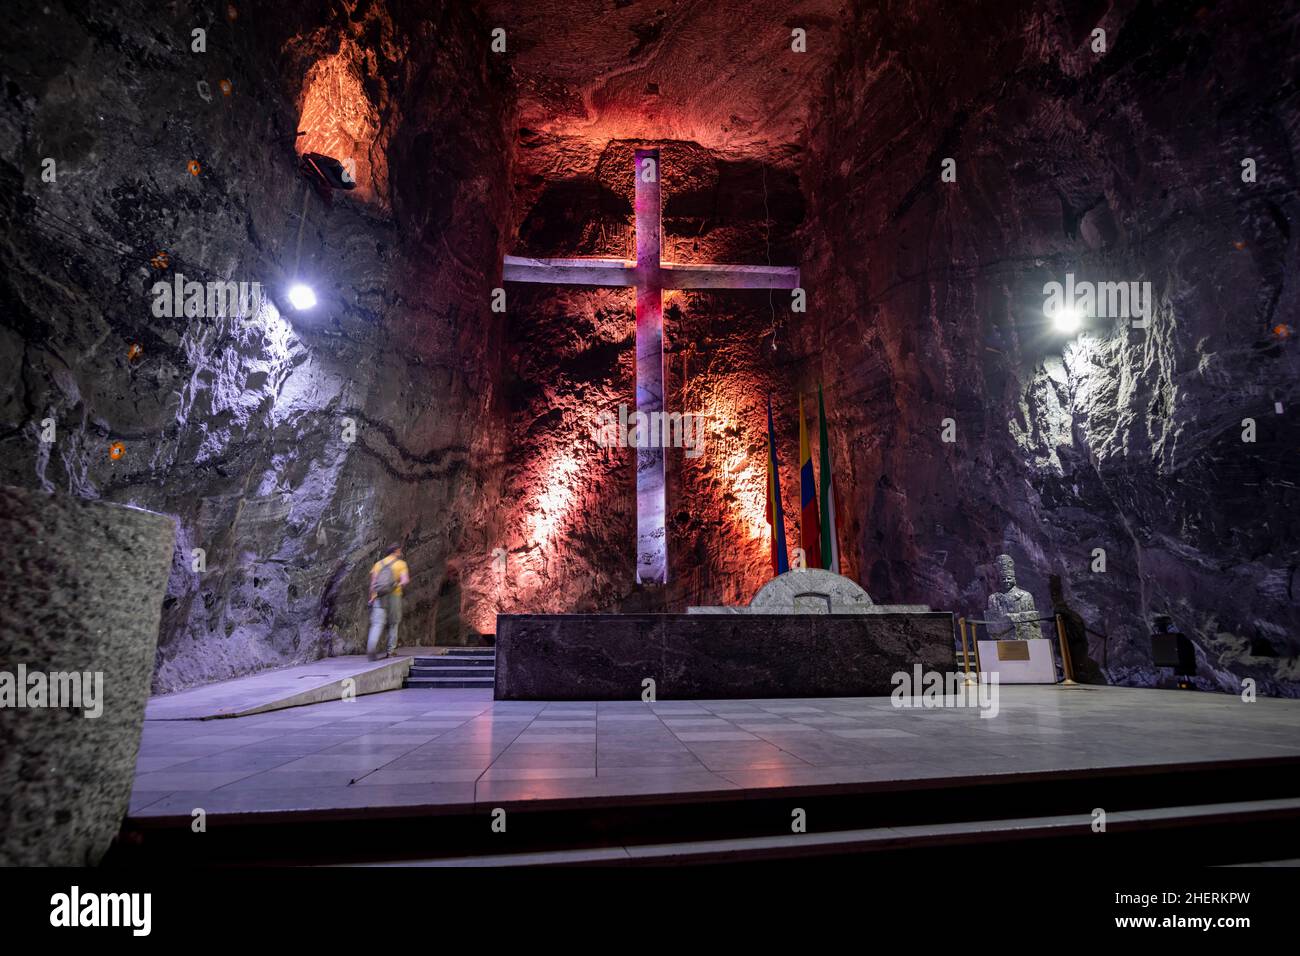 Cathédrale de Sal, la spectaculaire cathédrale de sel catholique souterraine.Parque de la Sal, Zipaquirá, Zipaquira, Cundinamarca, Colombie Banque D'Images